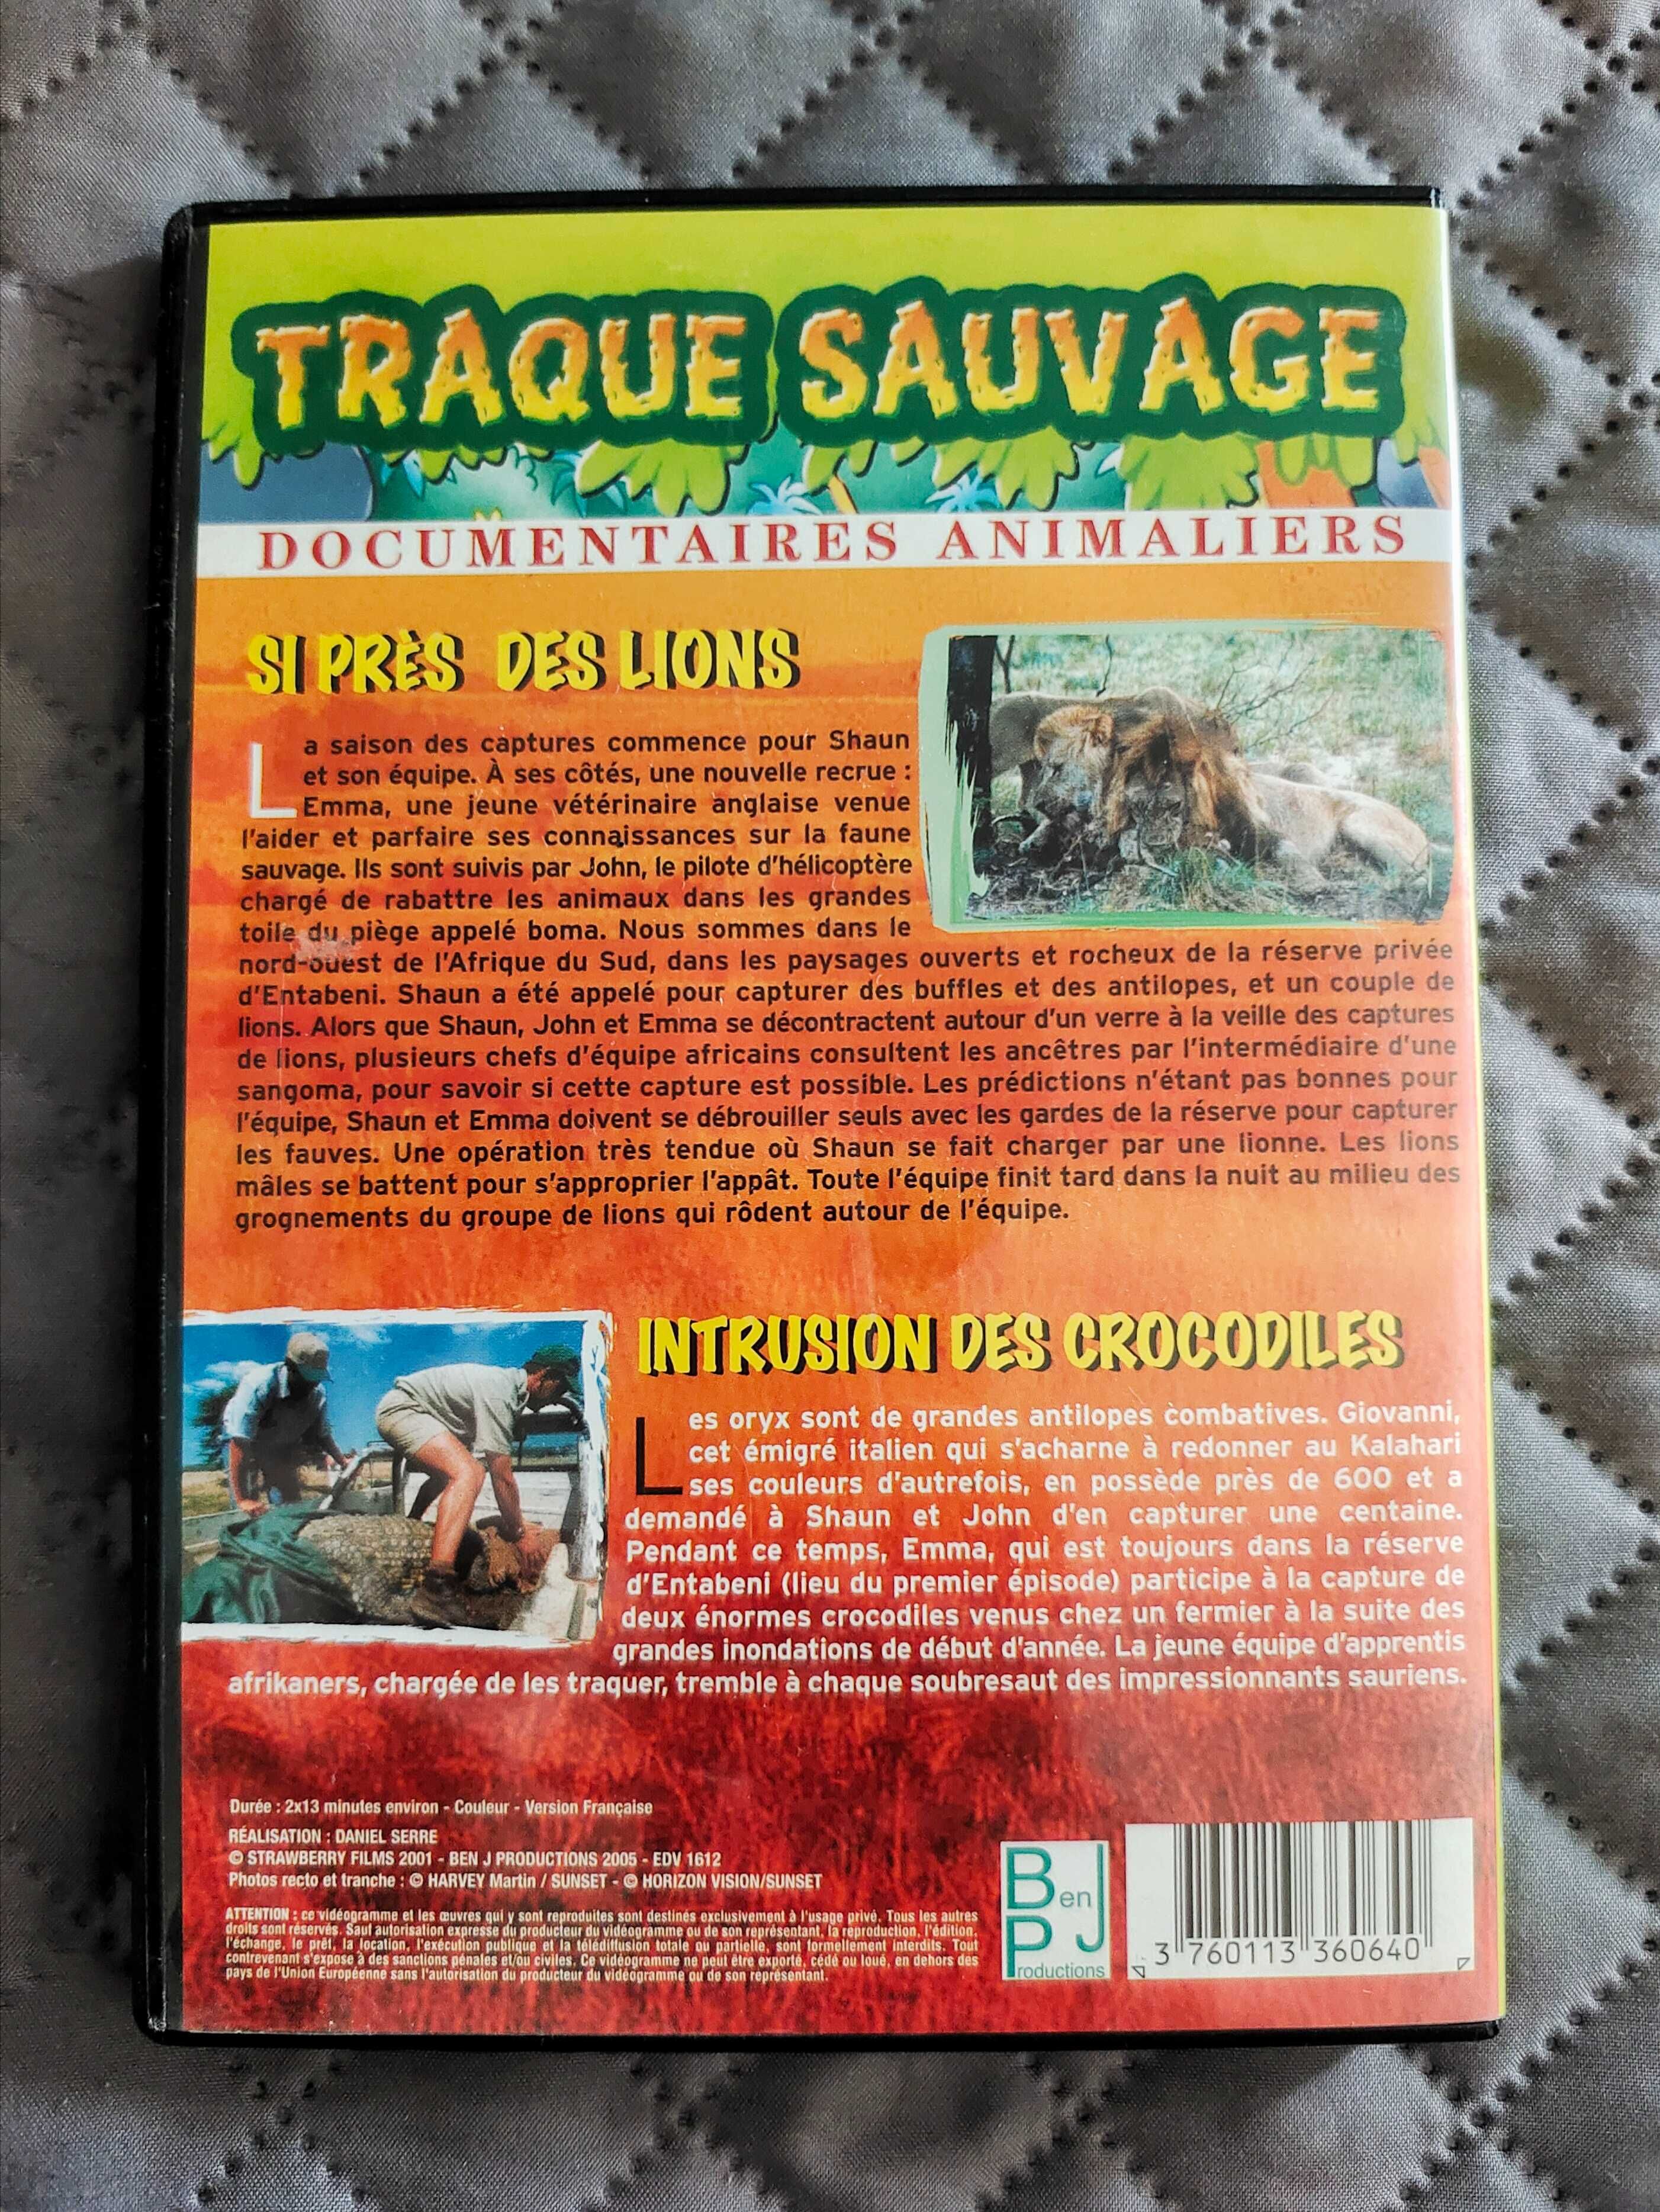 Filmy przyrodnicze traque sauvage - język francuski